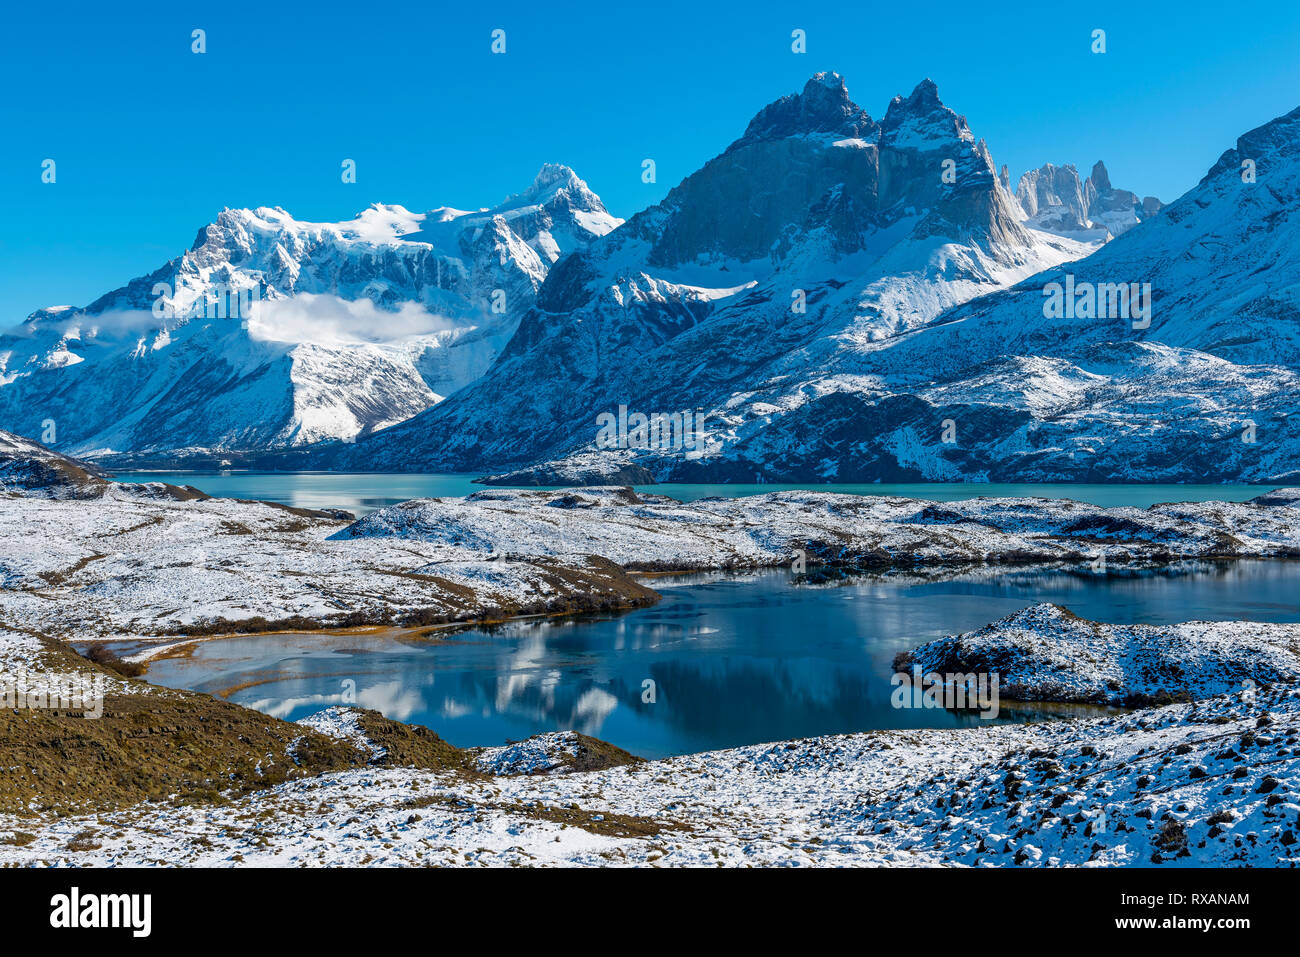 Lago Nordenskjold y el Lago Pehoé con los cuernos y Torres del Paine picos nevados en invierno, el Parque Nacional Torres del Paine, Patagonia, Chile. Foto de stock